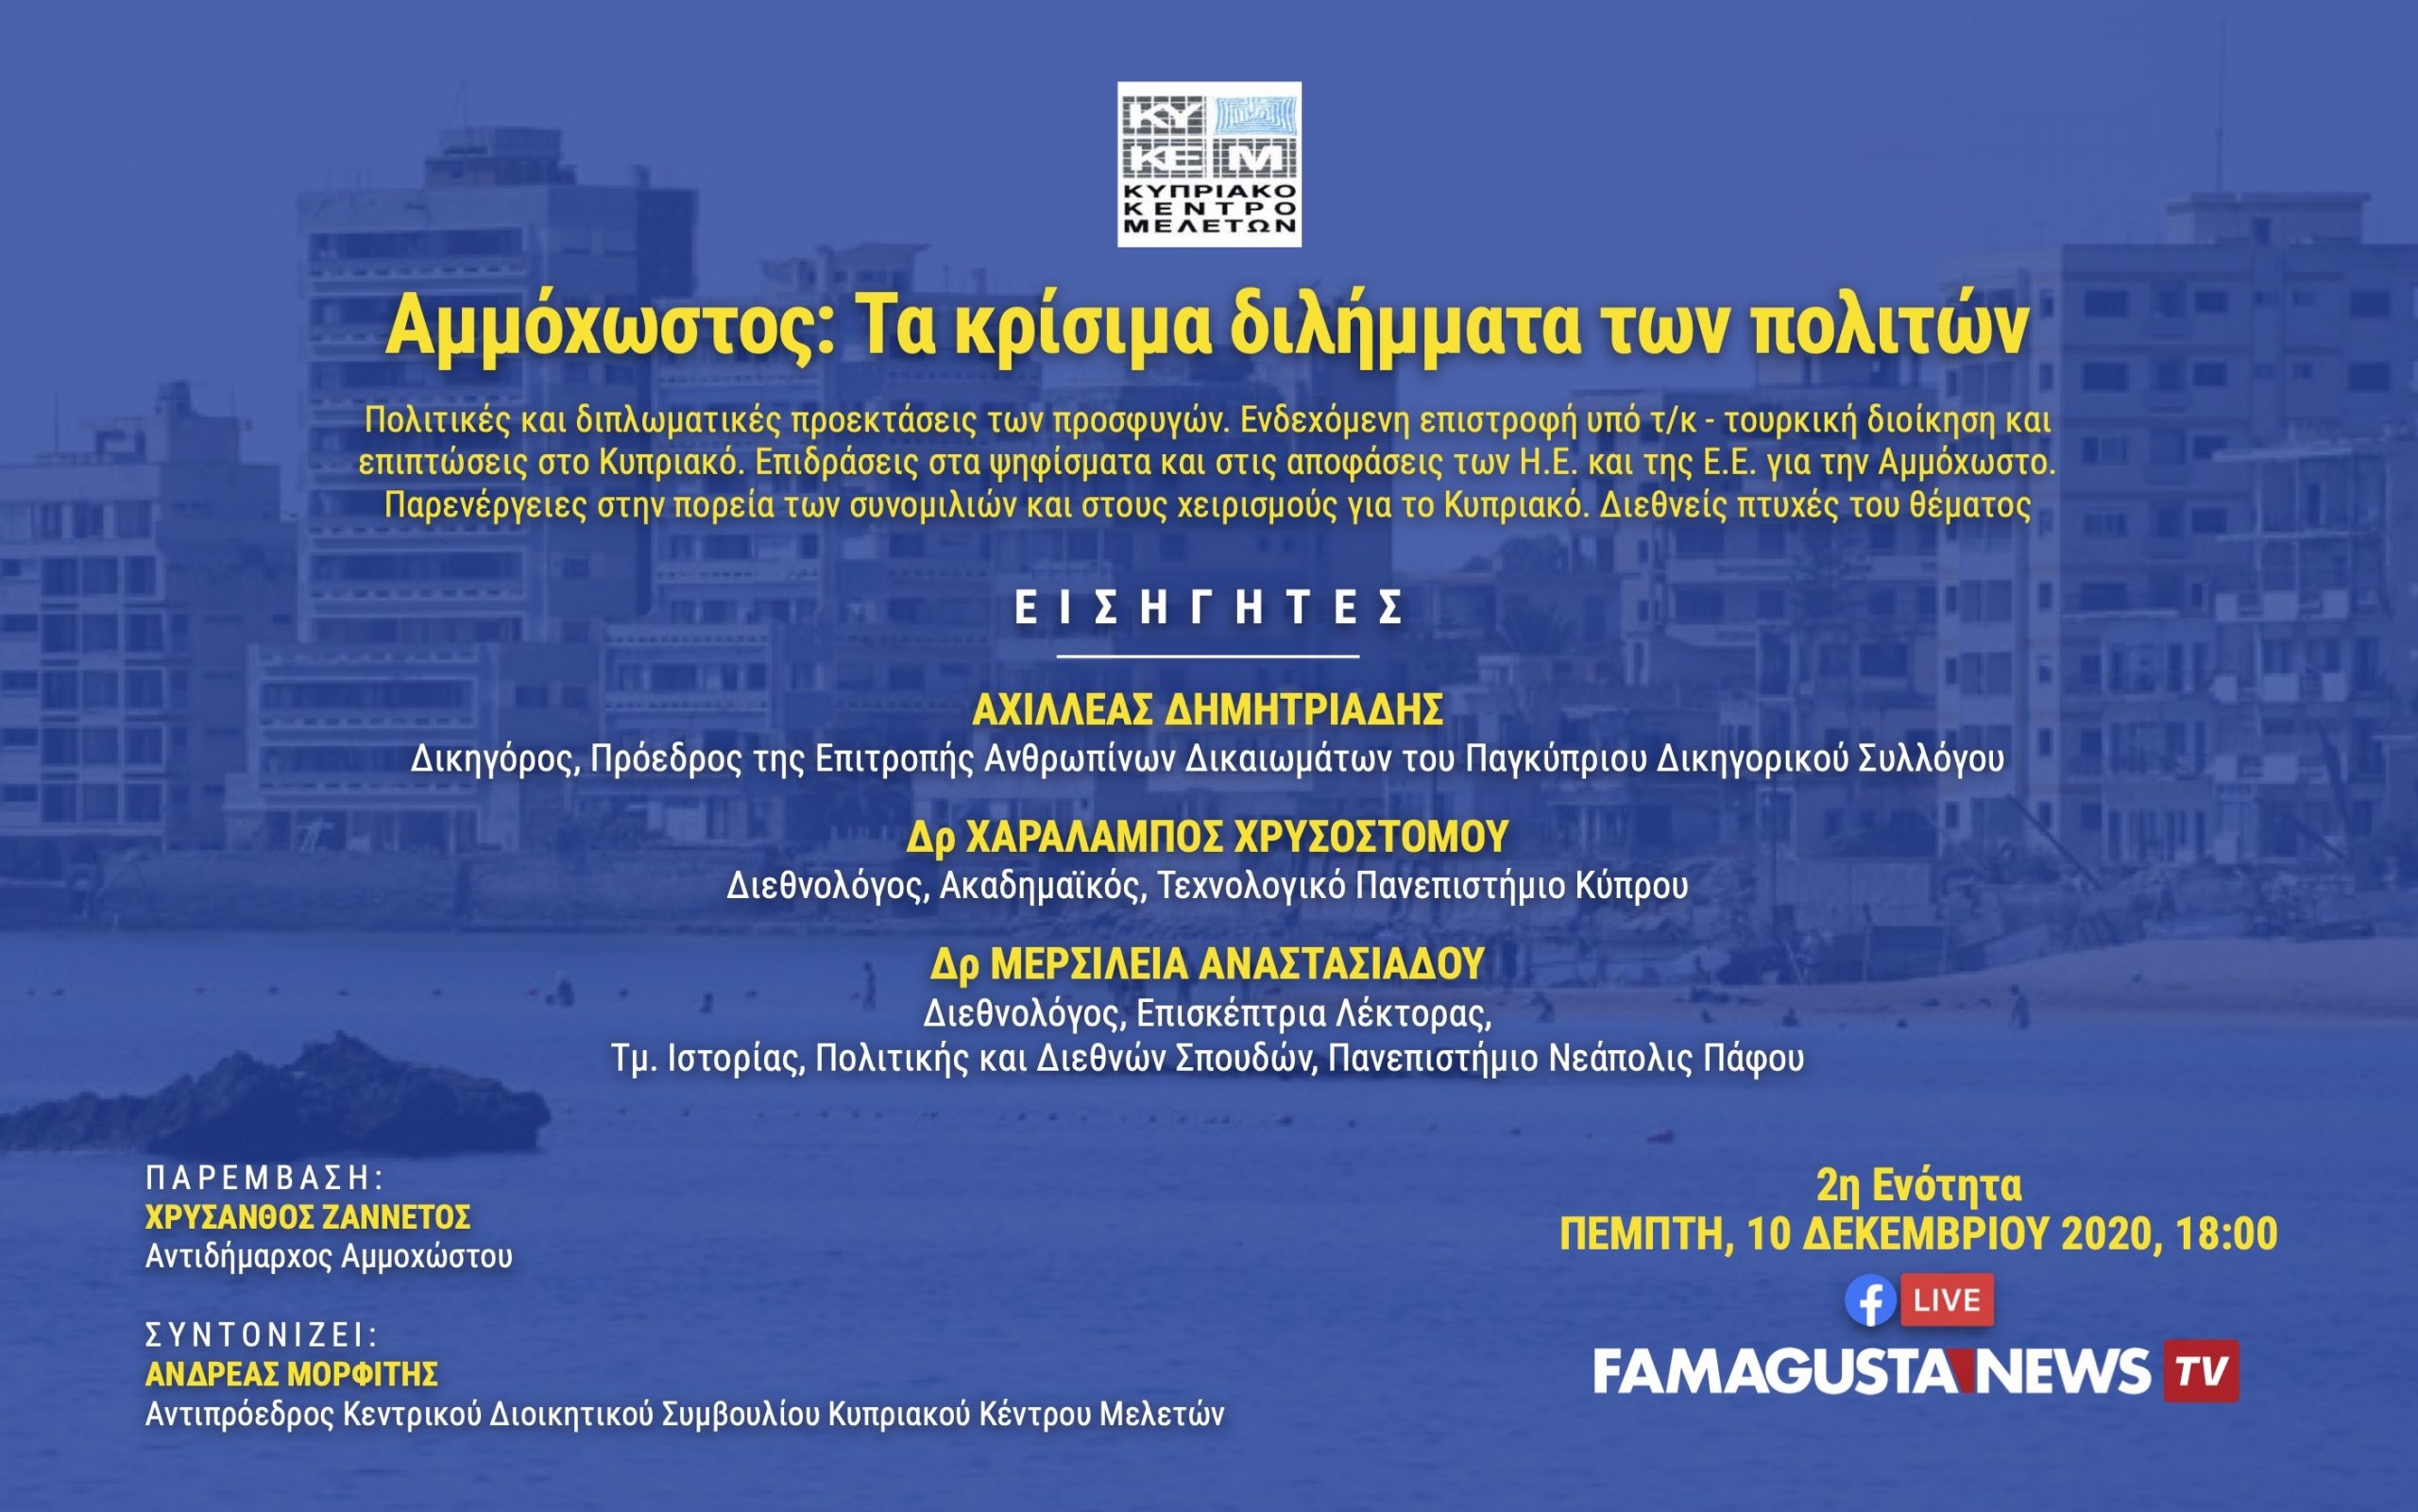 KYKEM ENOTHTA 2 scaled FamagustaNews TV